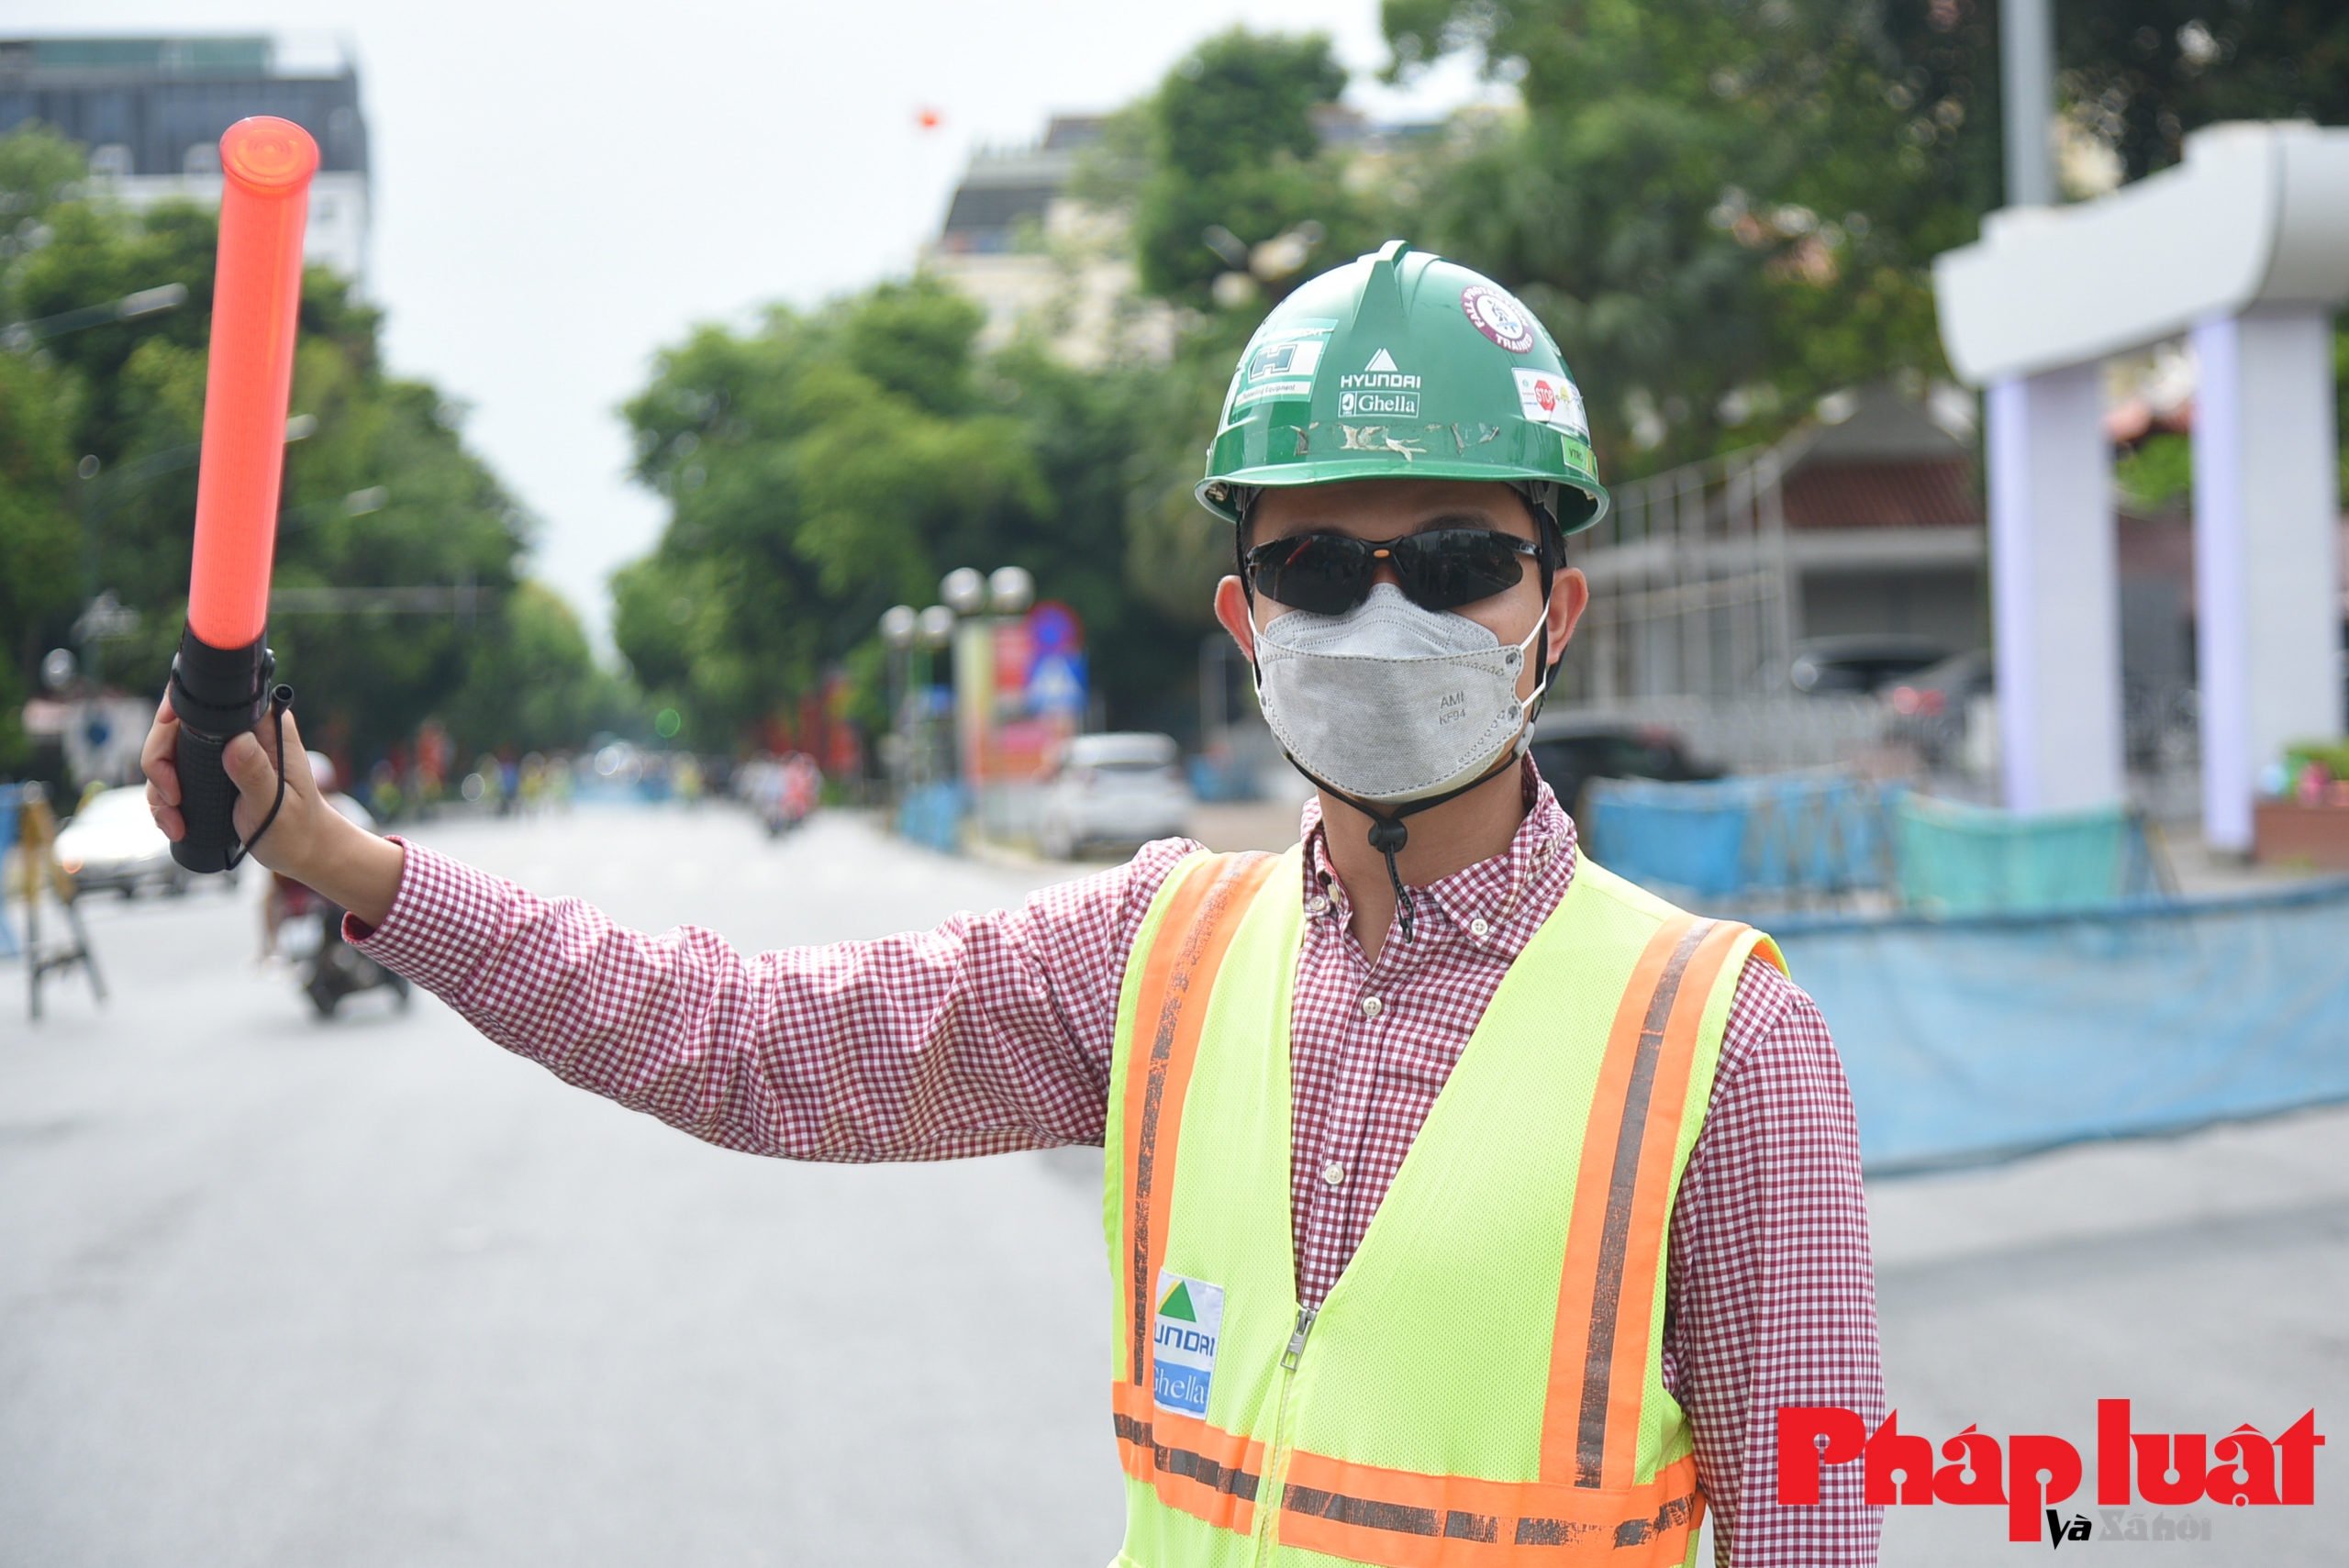 Hà Nội phân luồng đường Trần Hưng Đạo phục vụ thi công đường sắt Metro